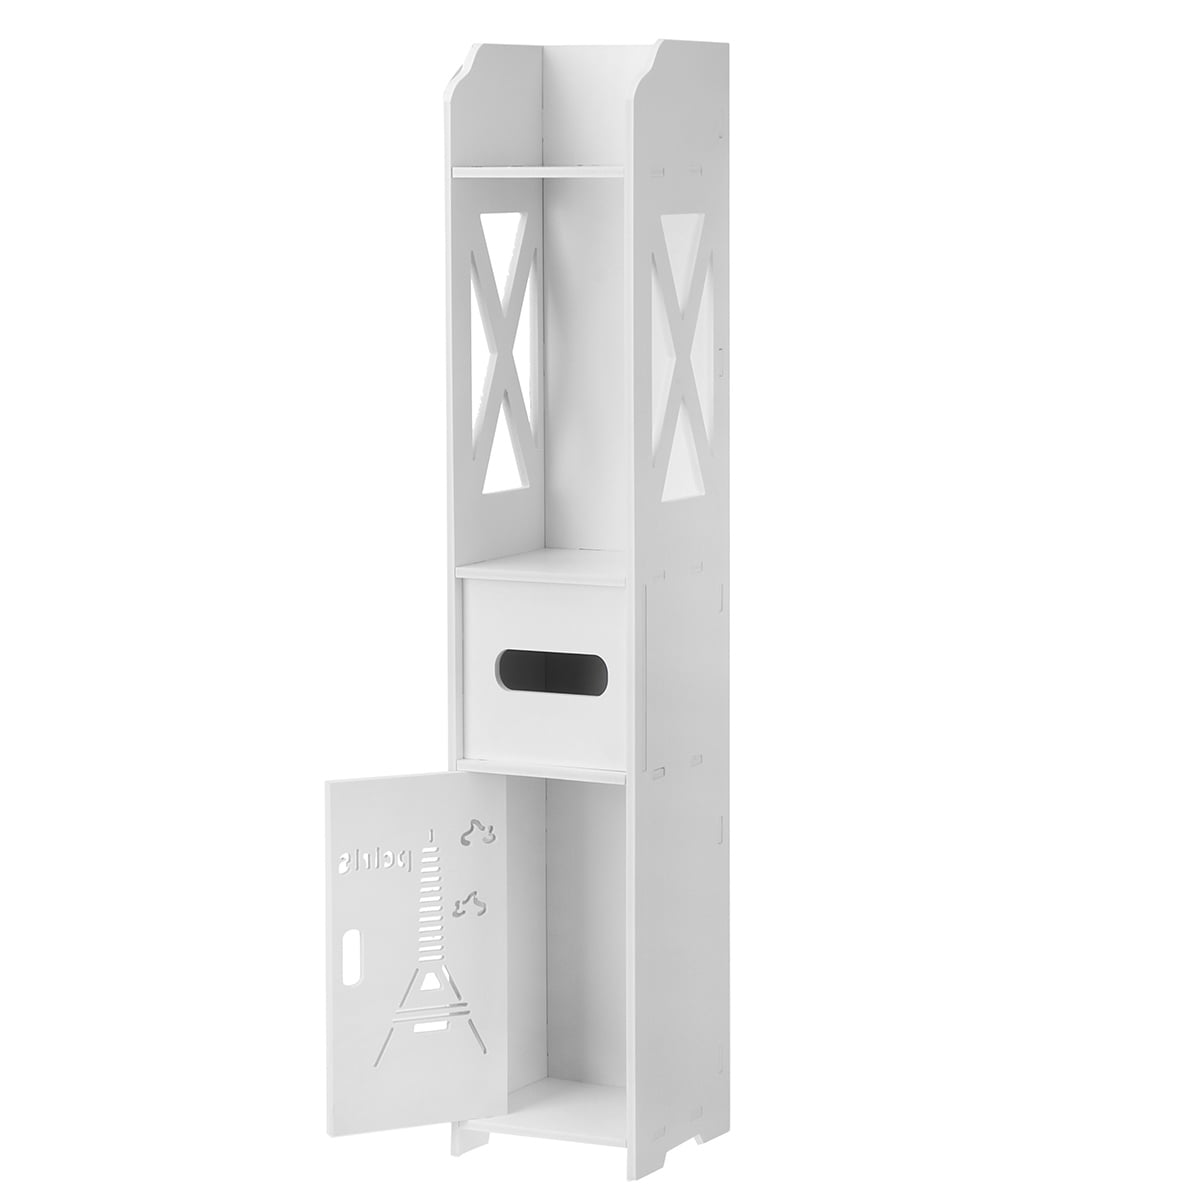 Details about   3-Tier Bathroom Cabinet Mini Storage Shelf Tissue Dispensers Organizer Rack 